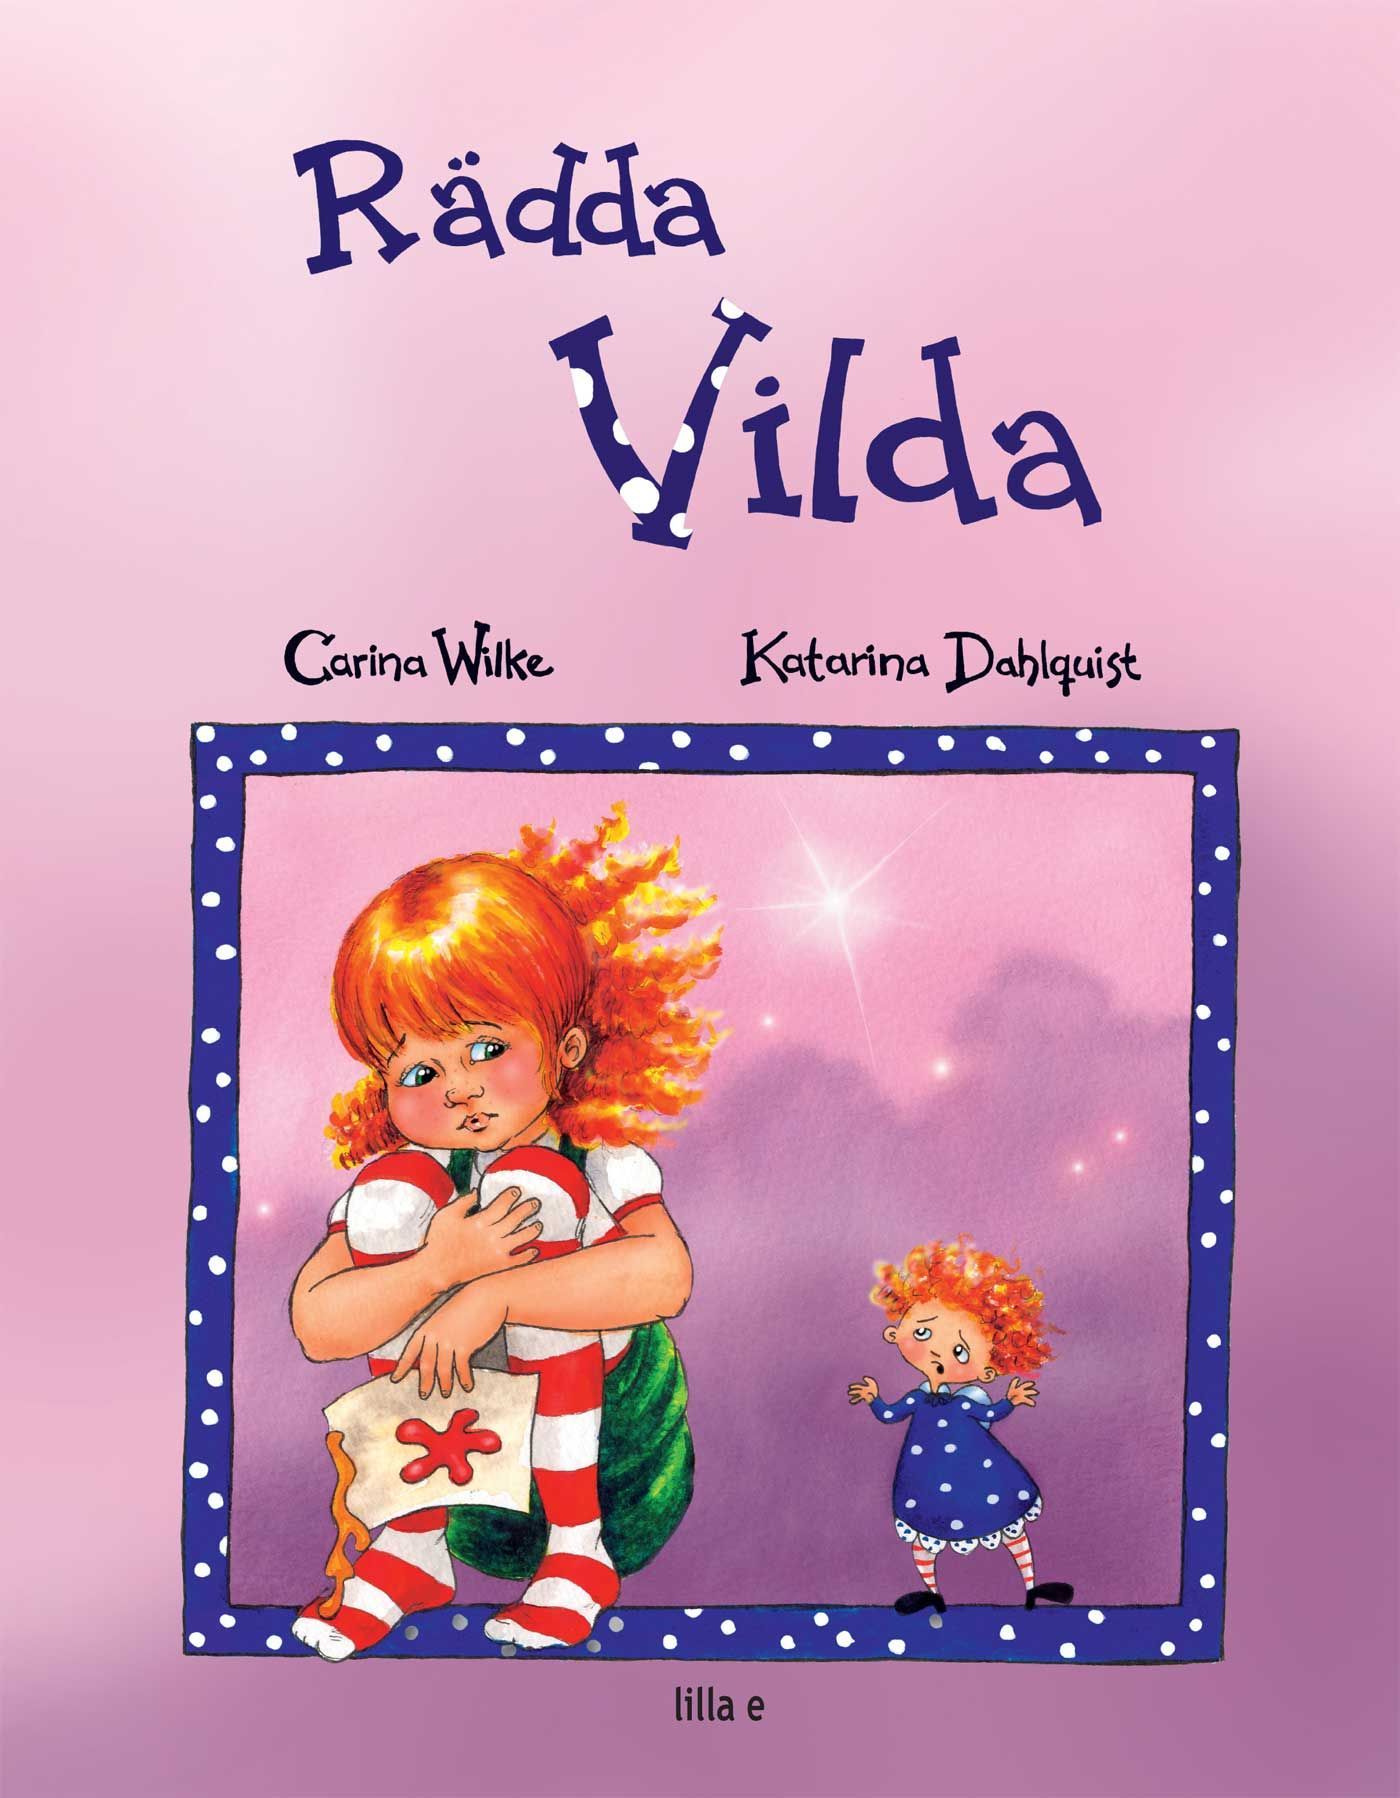 Rädda Vilda /Rädda Molly, e-bok av Carina Wilke